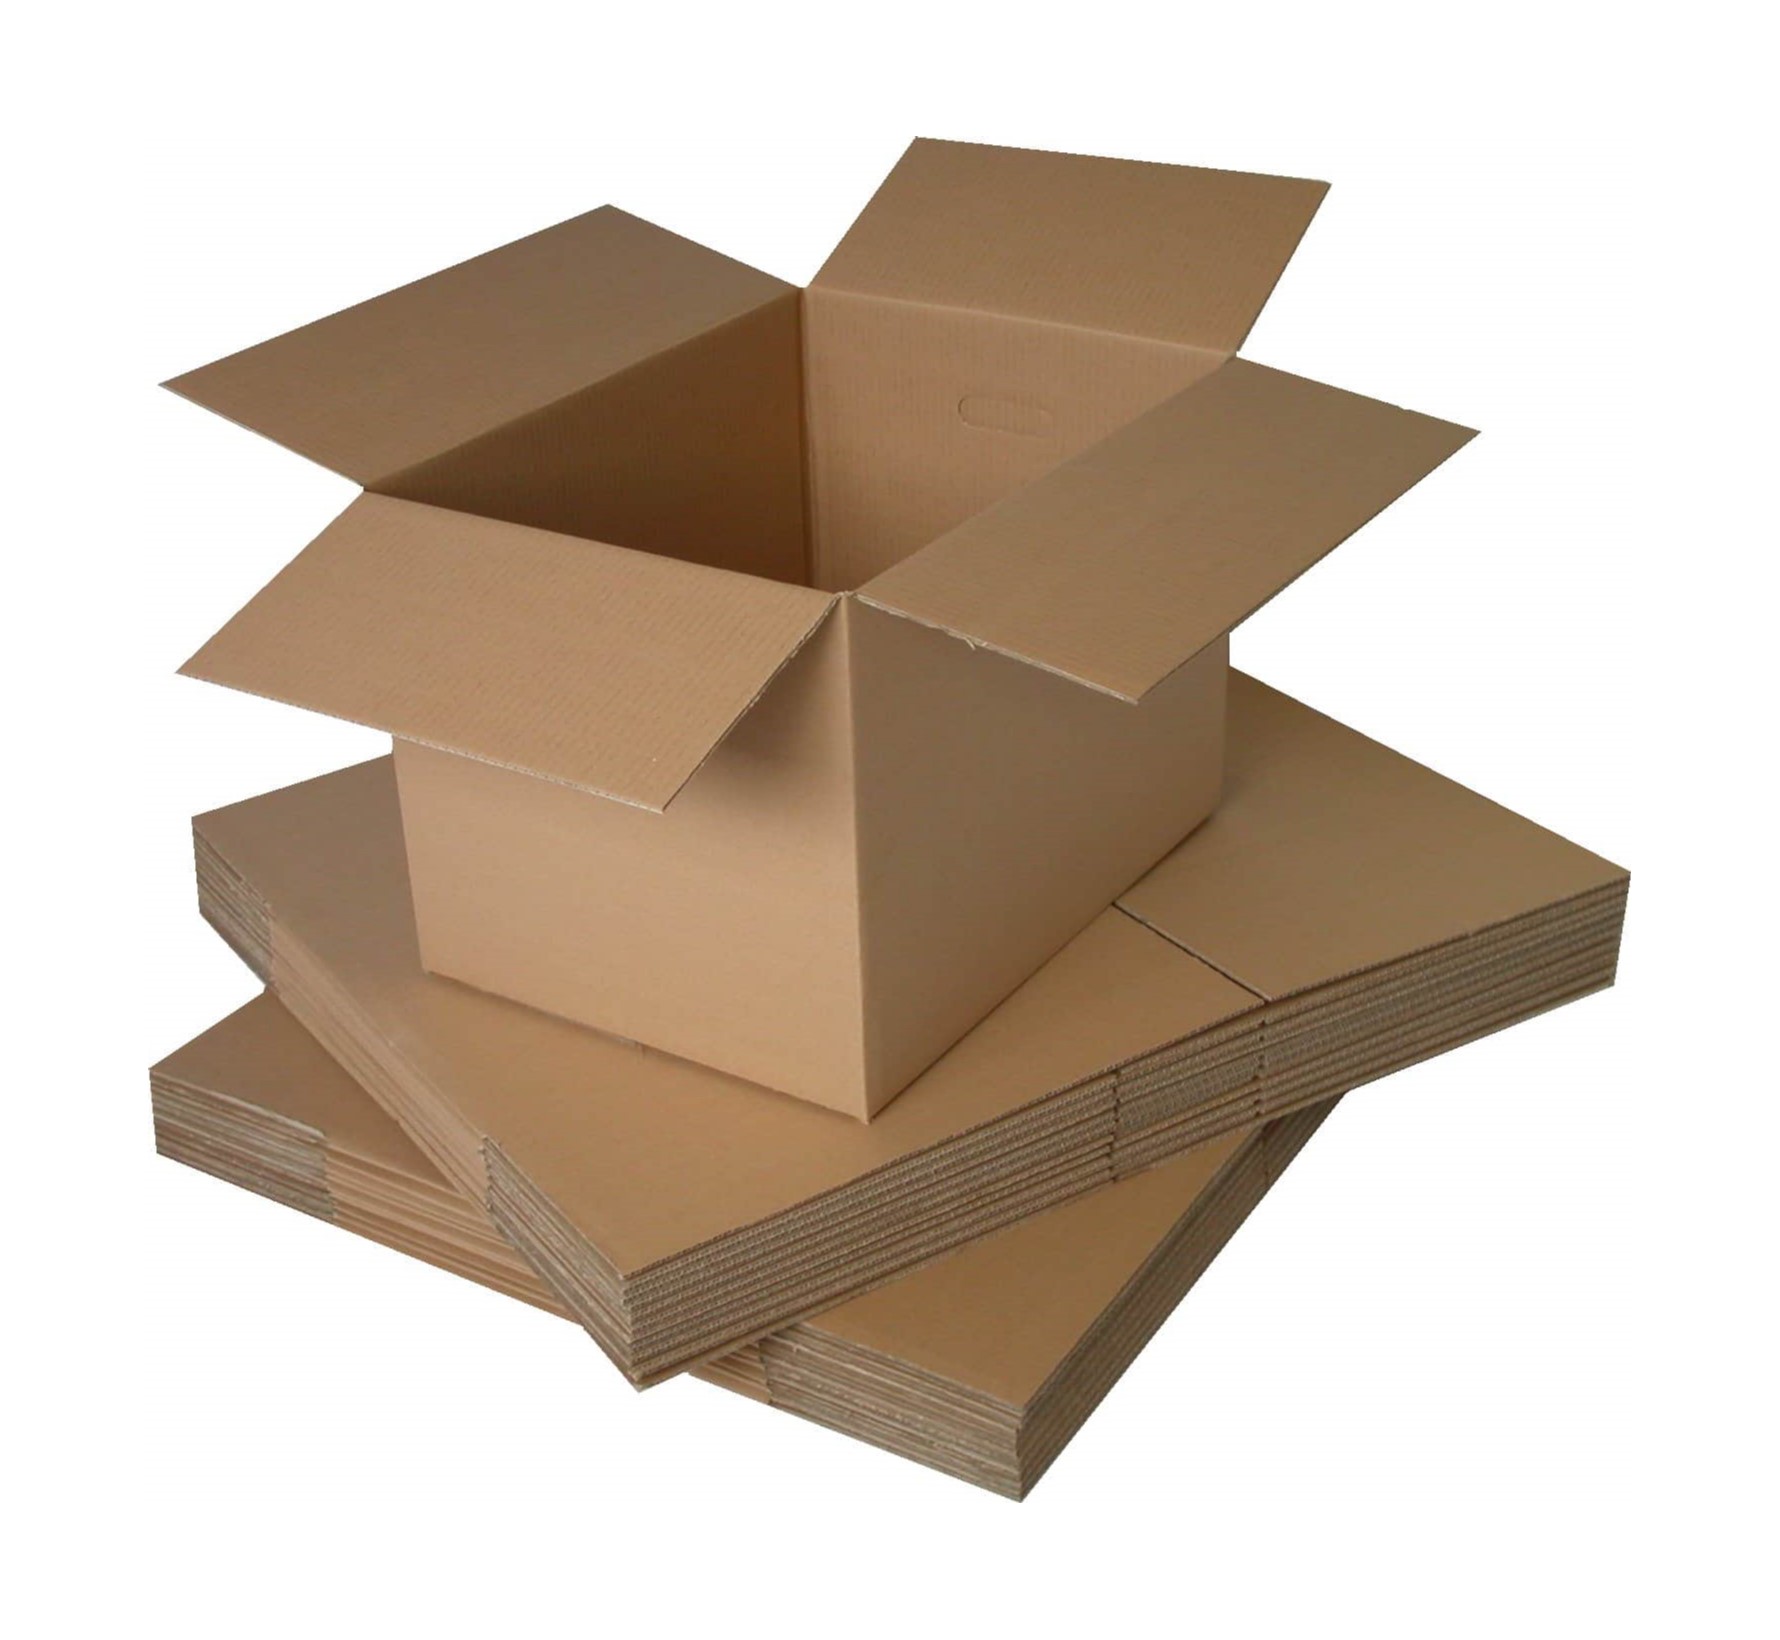 Grommen hoekpunt Noordoosten Kleine kartonnen doosjes kopen? Snel naar Bonsema Verpakking!